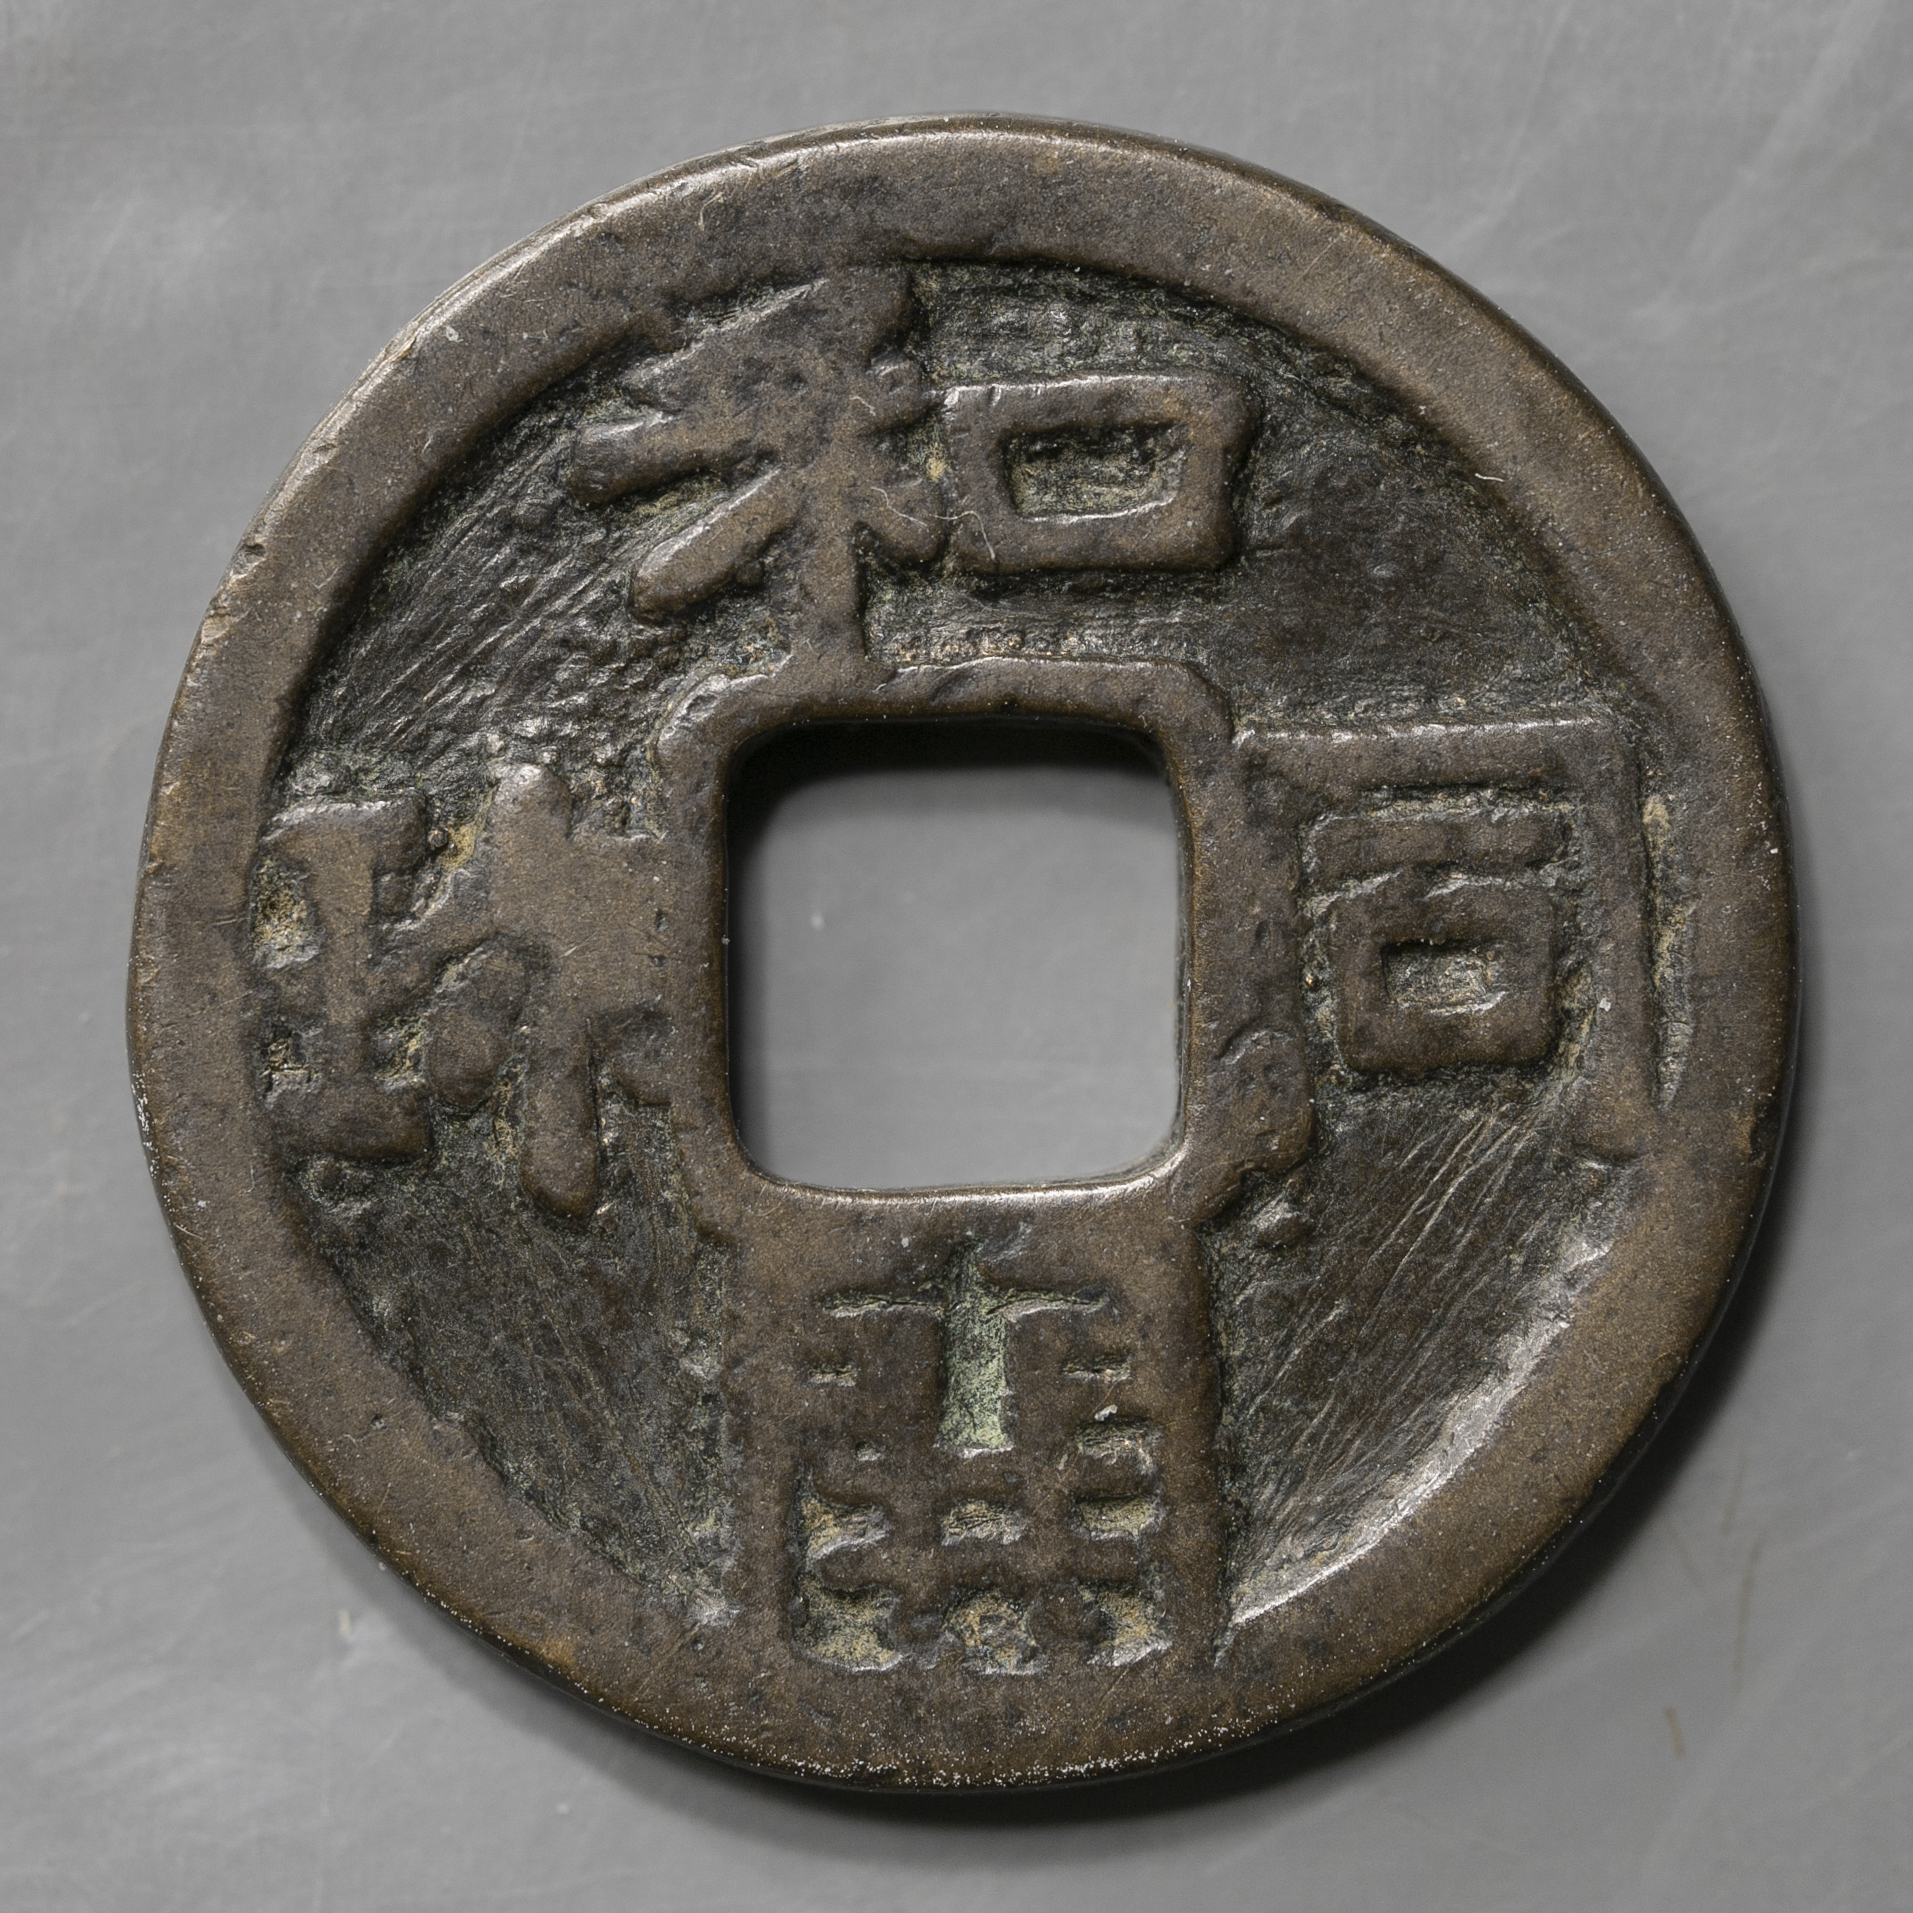 限时竞拍,絵銭:面子銭和同開珎（闊縁） 径約23.3mm（約5.1g）